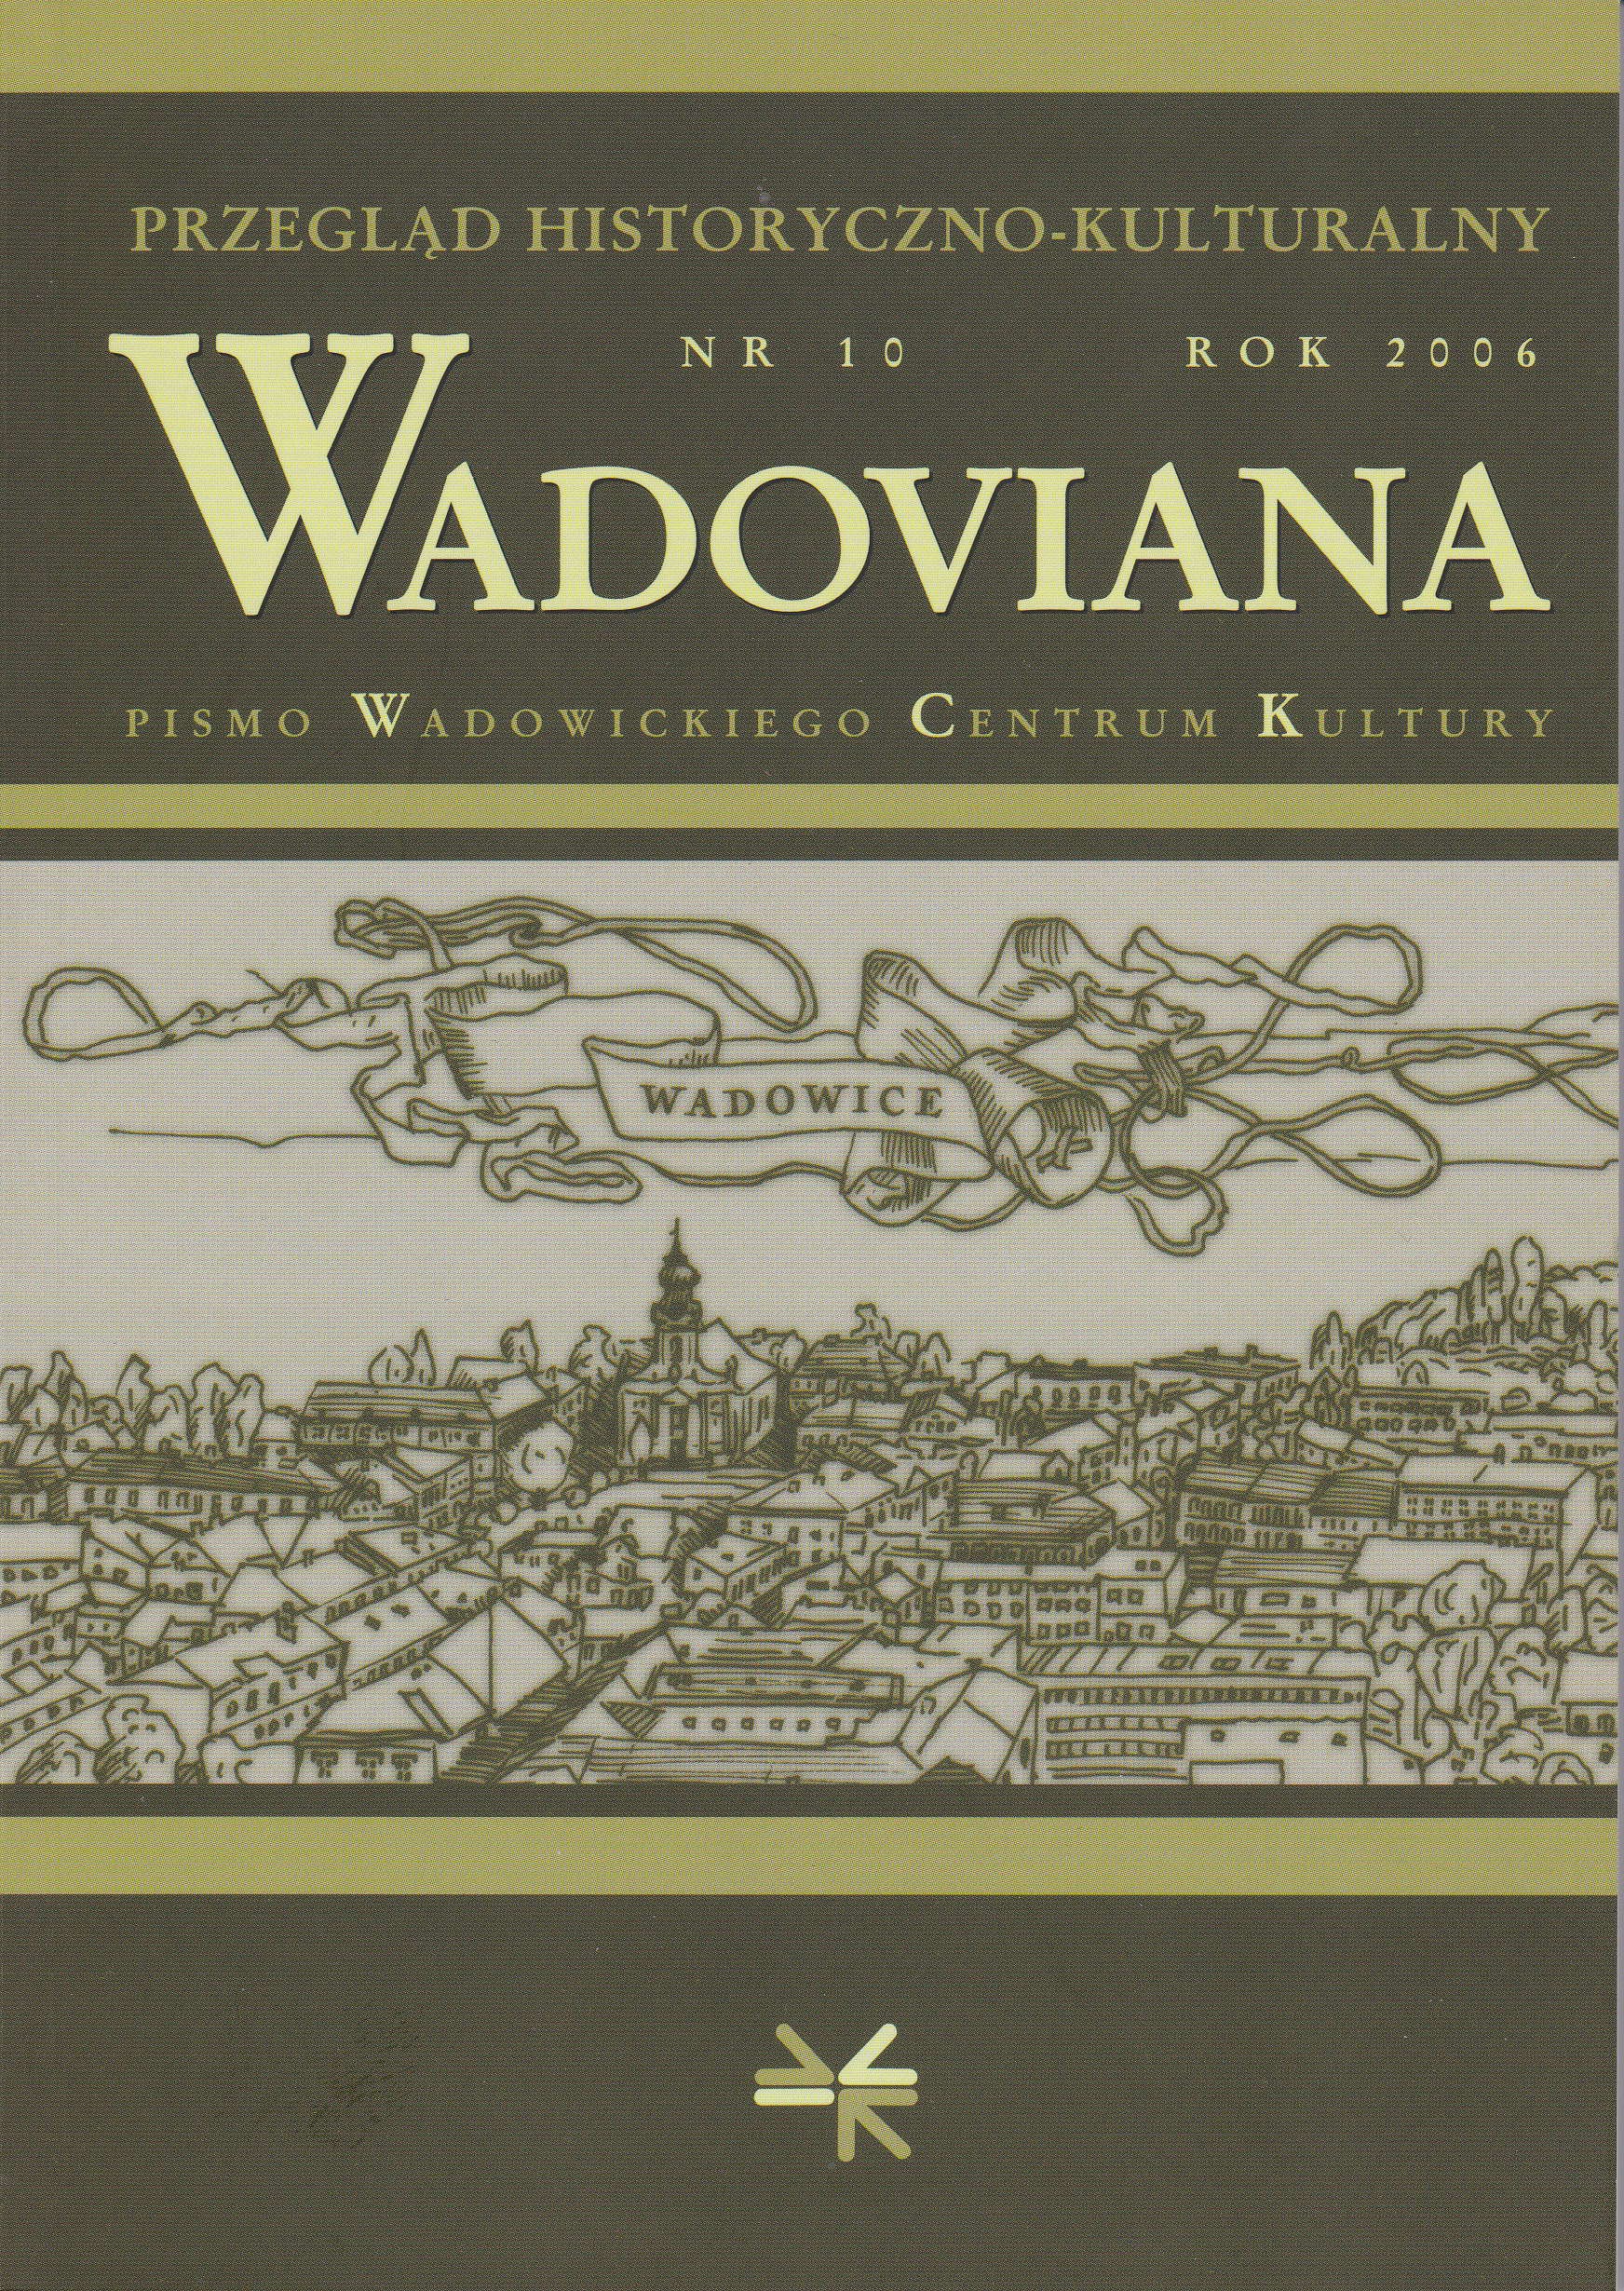 Wadowickie muzy 1918 - 1939